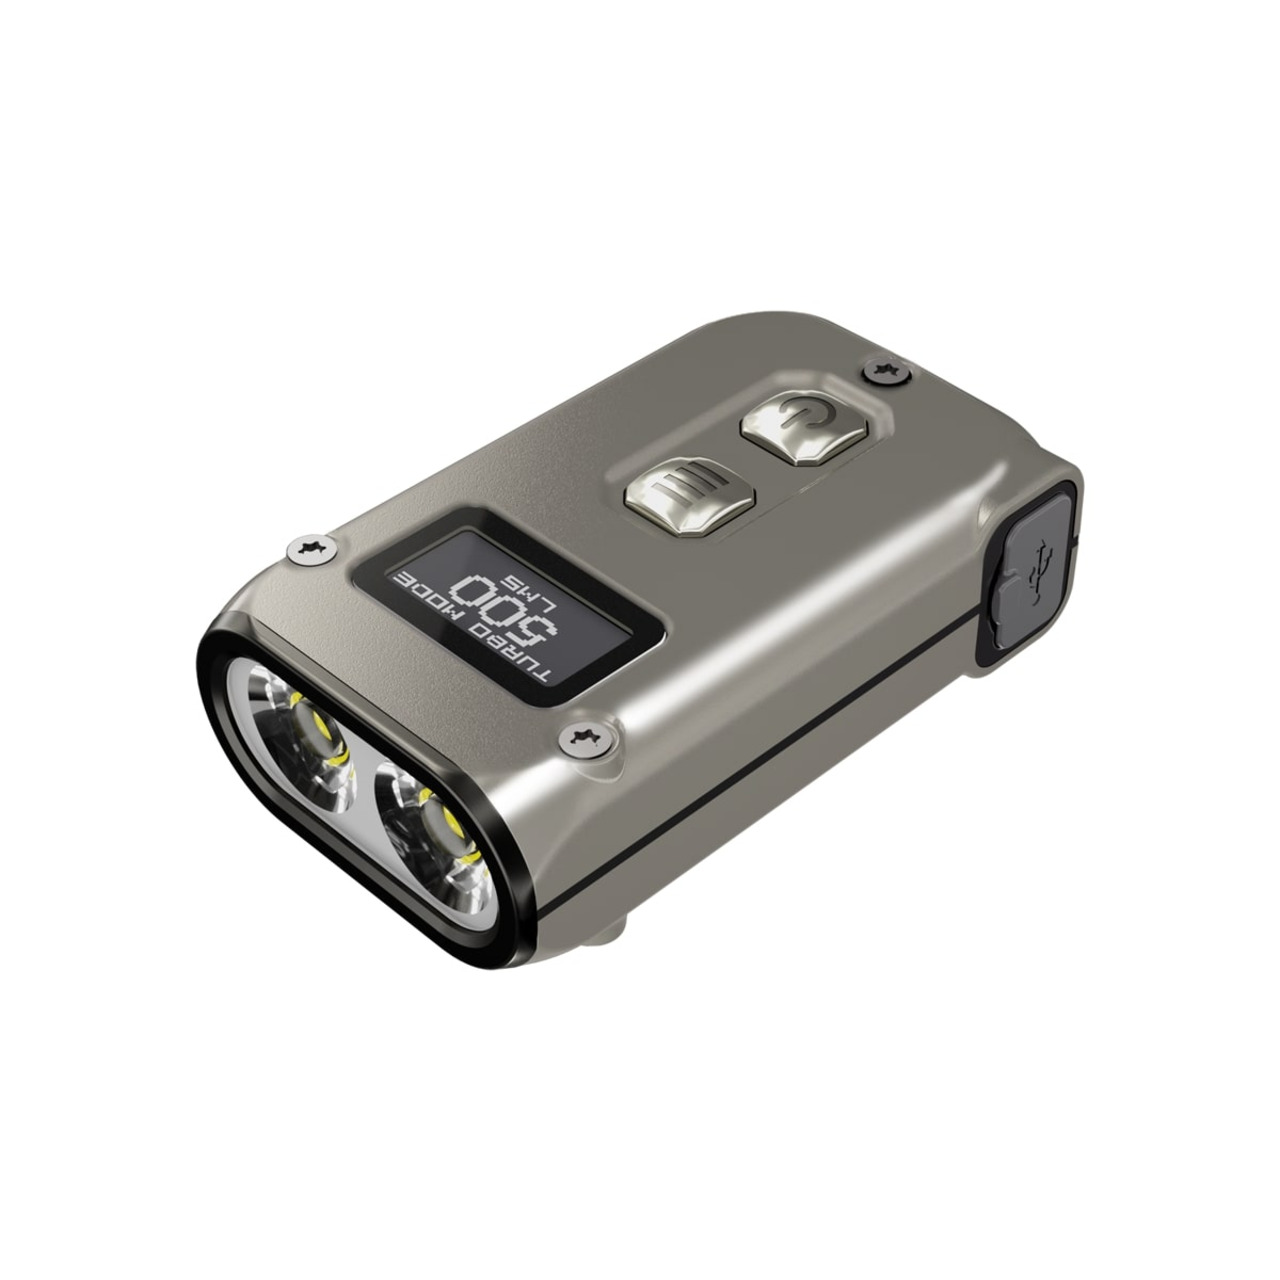 Nitecore LED-Handlampe TINI 2 Titanium- max- 500 lm- 89 m Reichweite- OLED-Display unter Freizeit- und Outdoortechnik